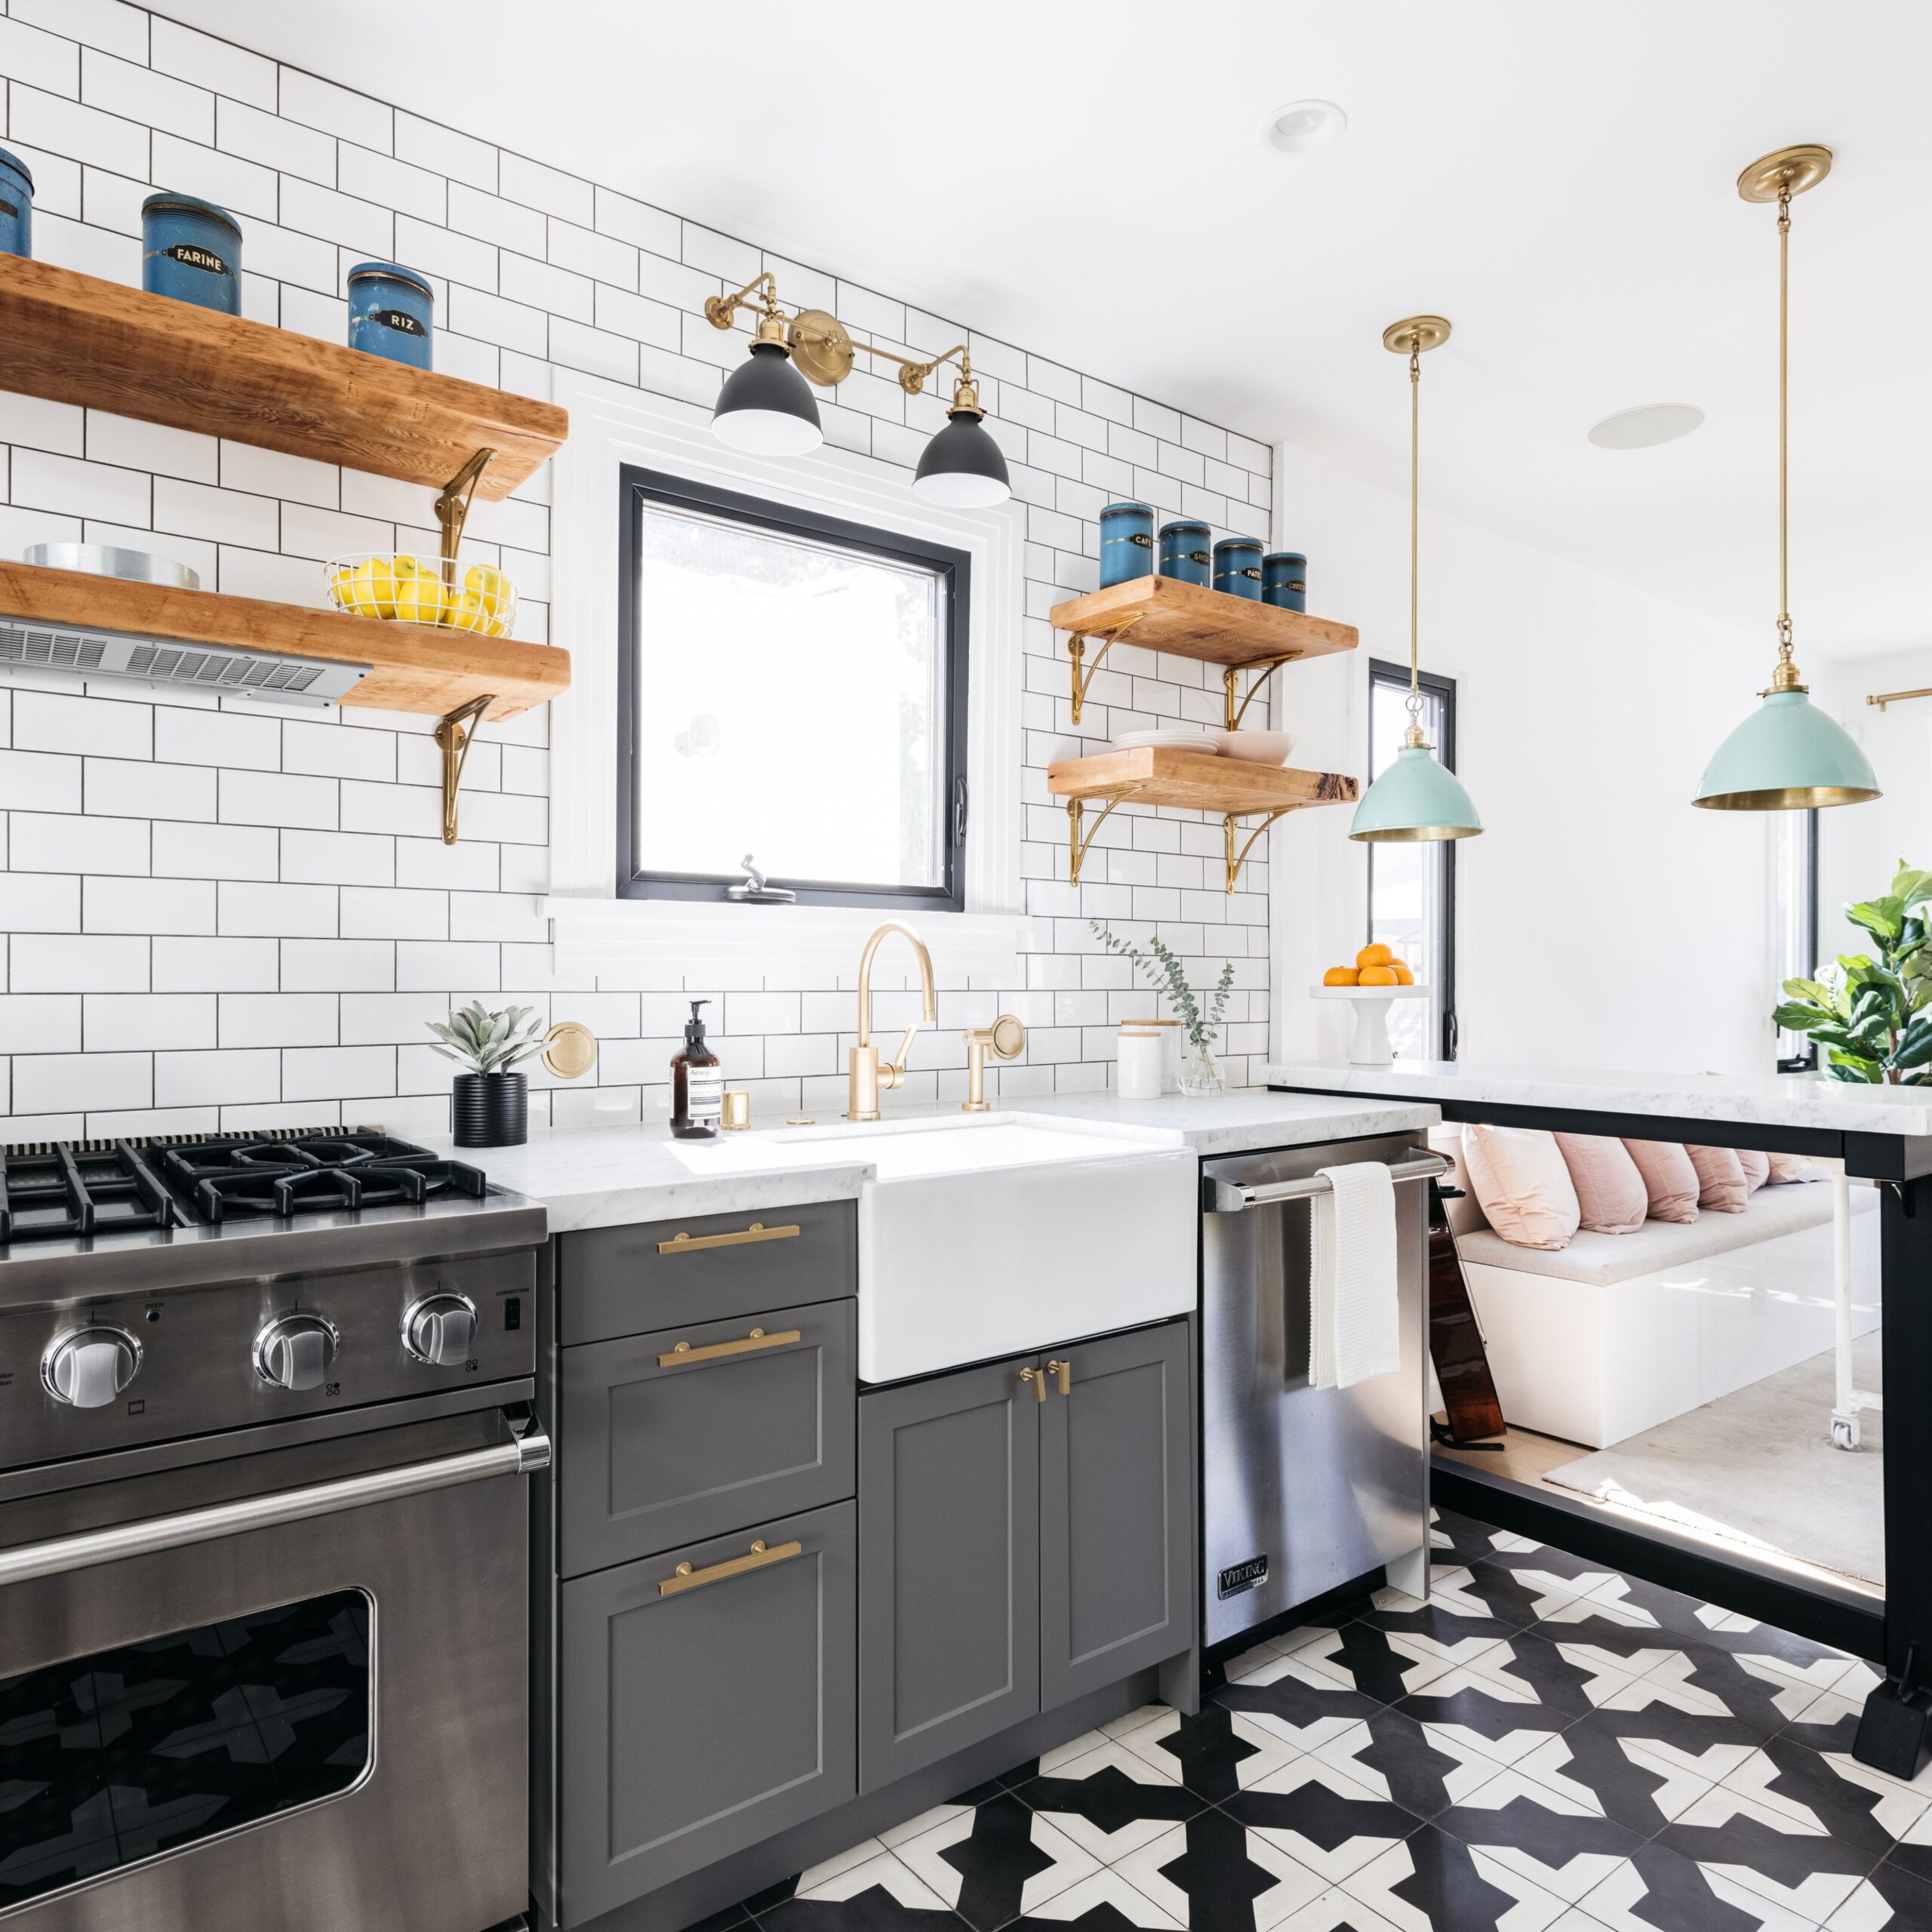 5 Inspiring Gray Kitchen Design Ideas - kitchen colour schemes grey